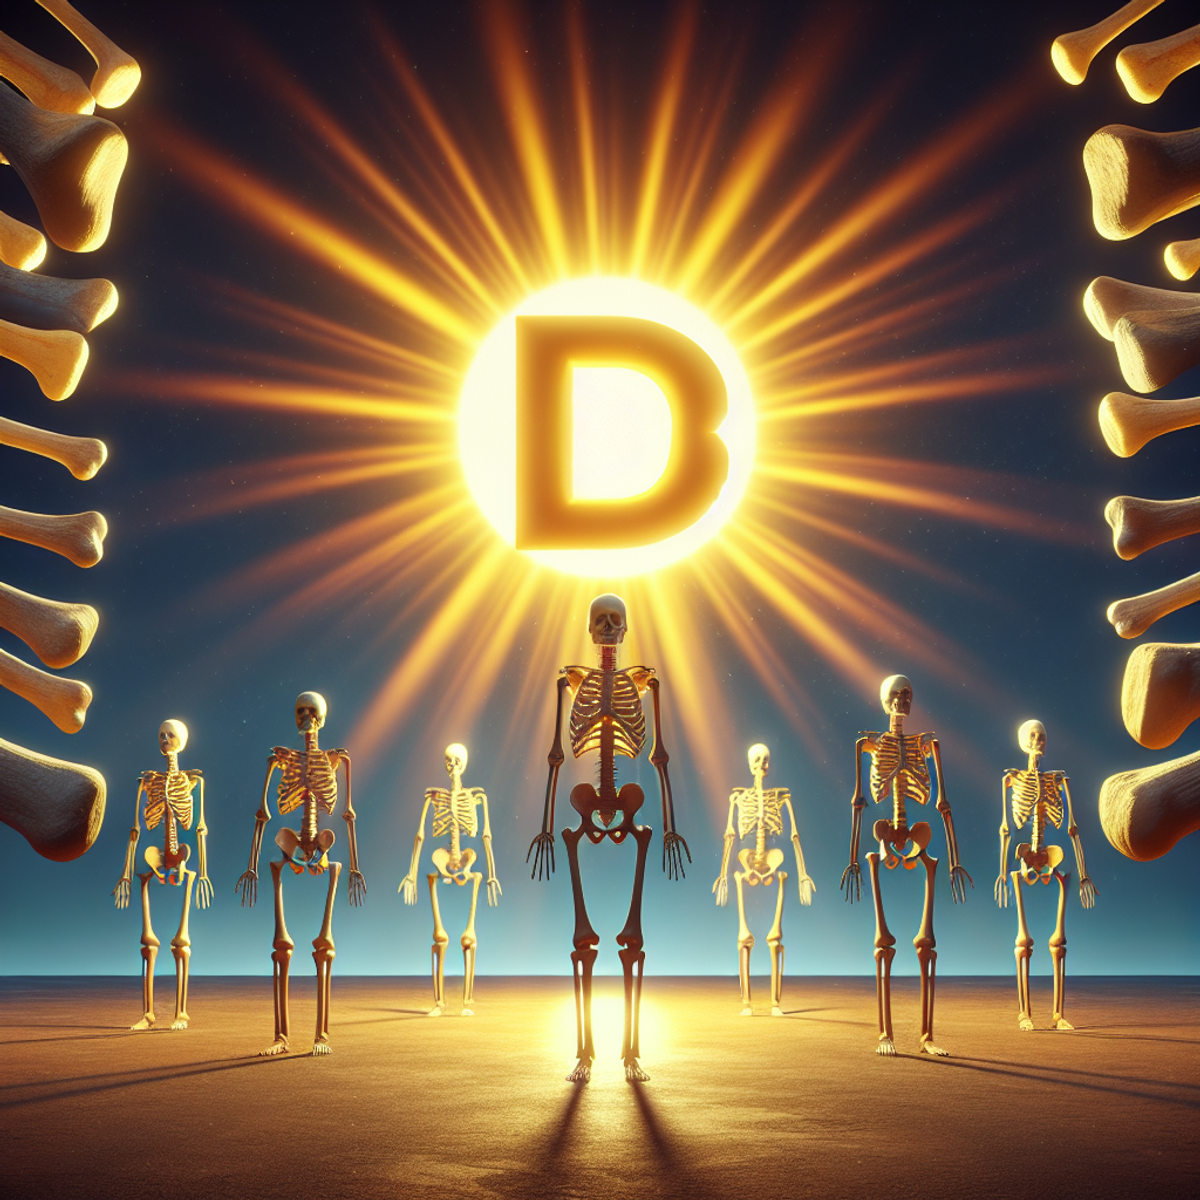 Sonce sije na simbolu D3 in oddaja žarke proti zdravim človeškim kosti.